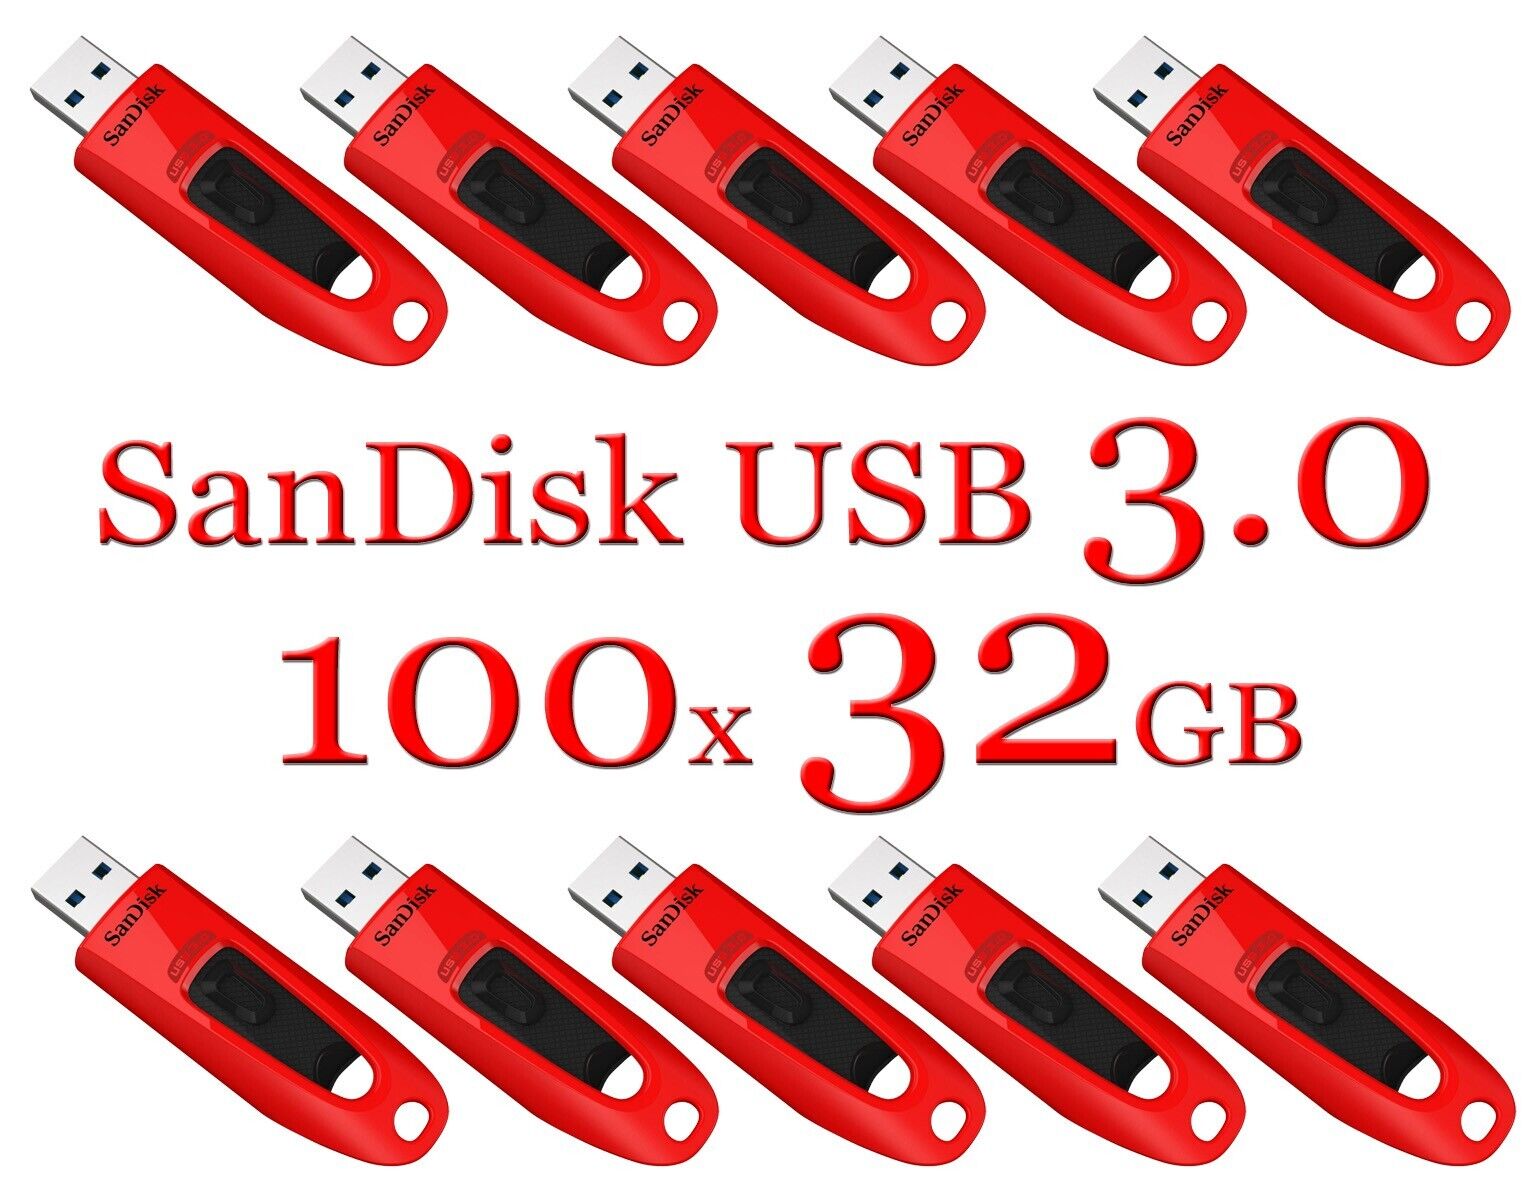 LOT 100x SanDisk 32GB ULTRA USB 3.0 flash drive -SDCZ48-032G 32 GB read 100 MB/s